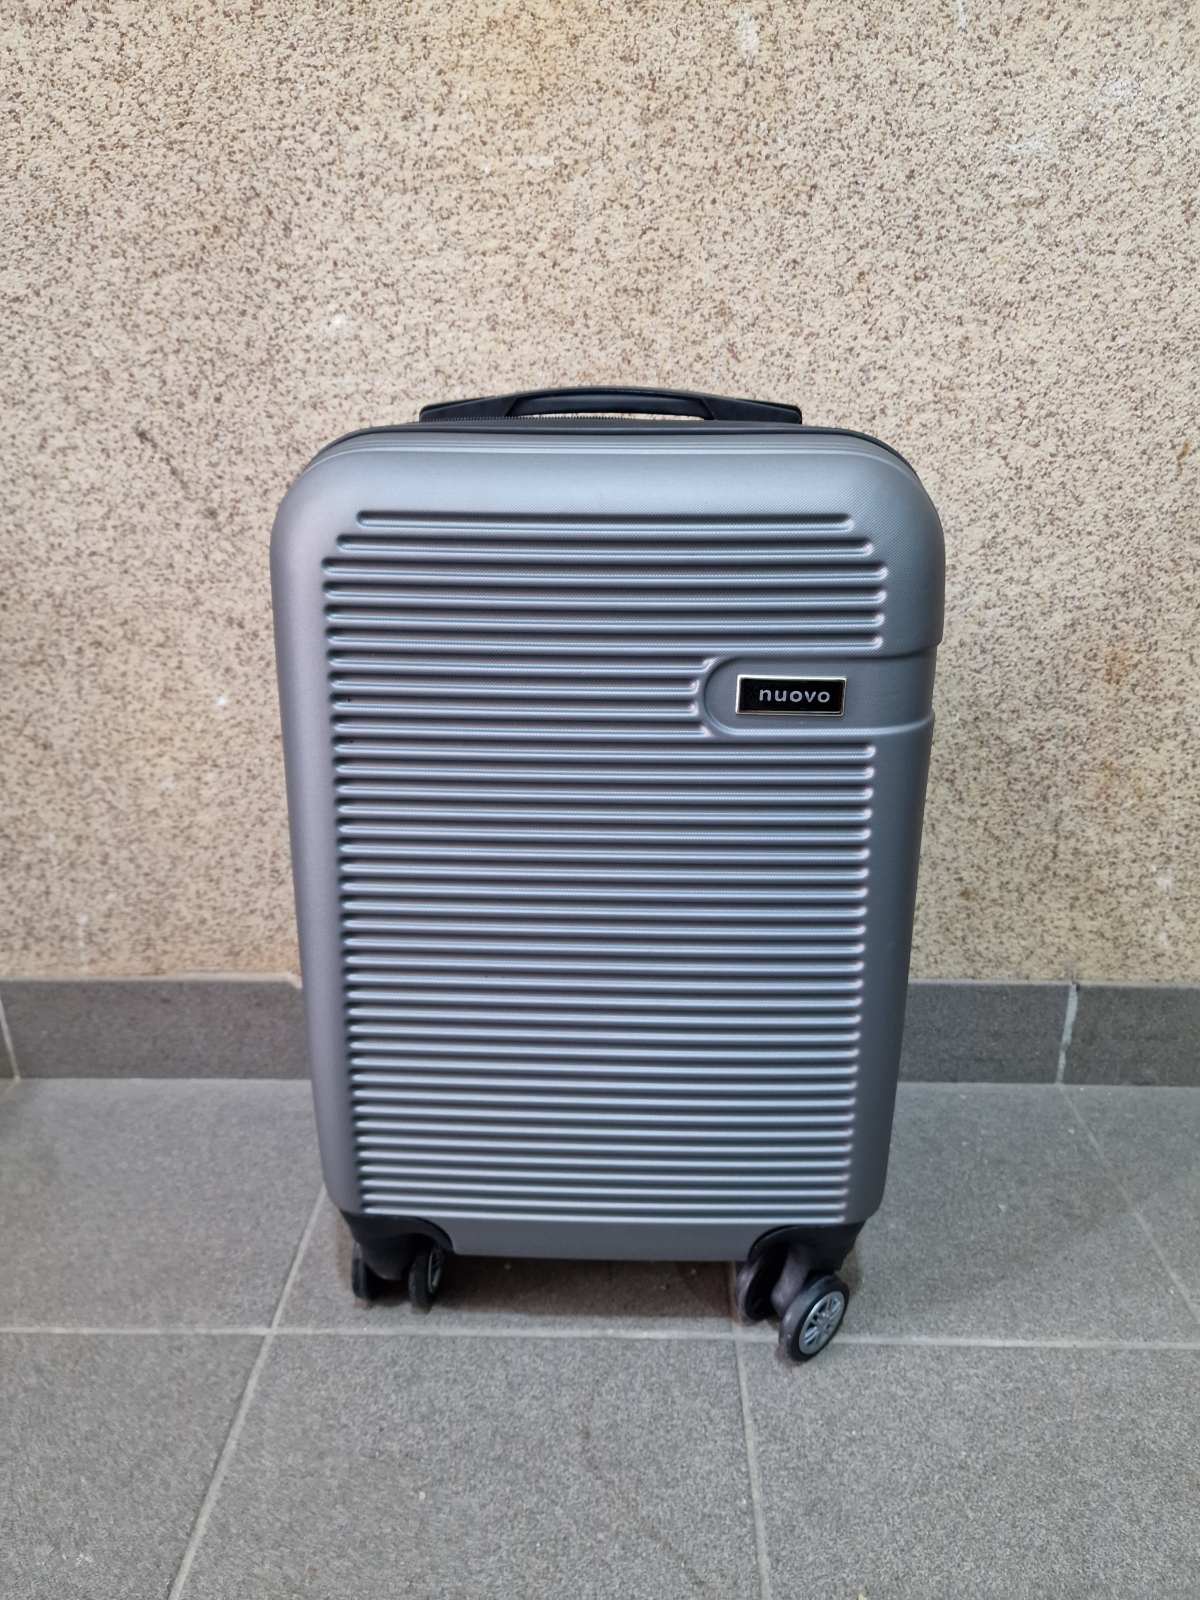 Kofer za putovanje od ABS sa 4 točkića kabinski Sivi